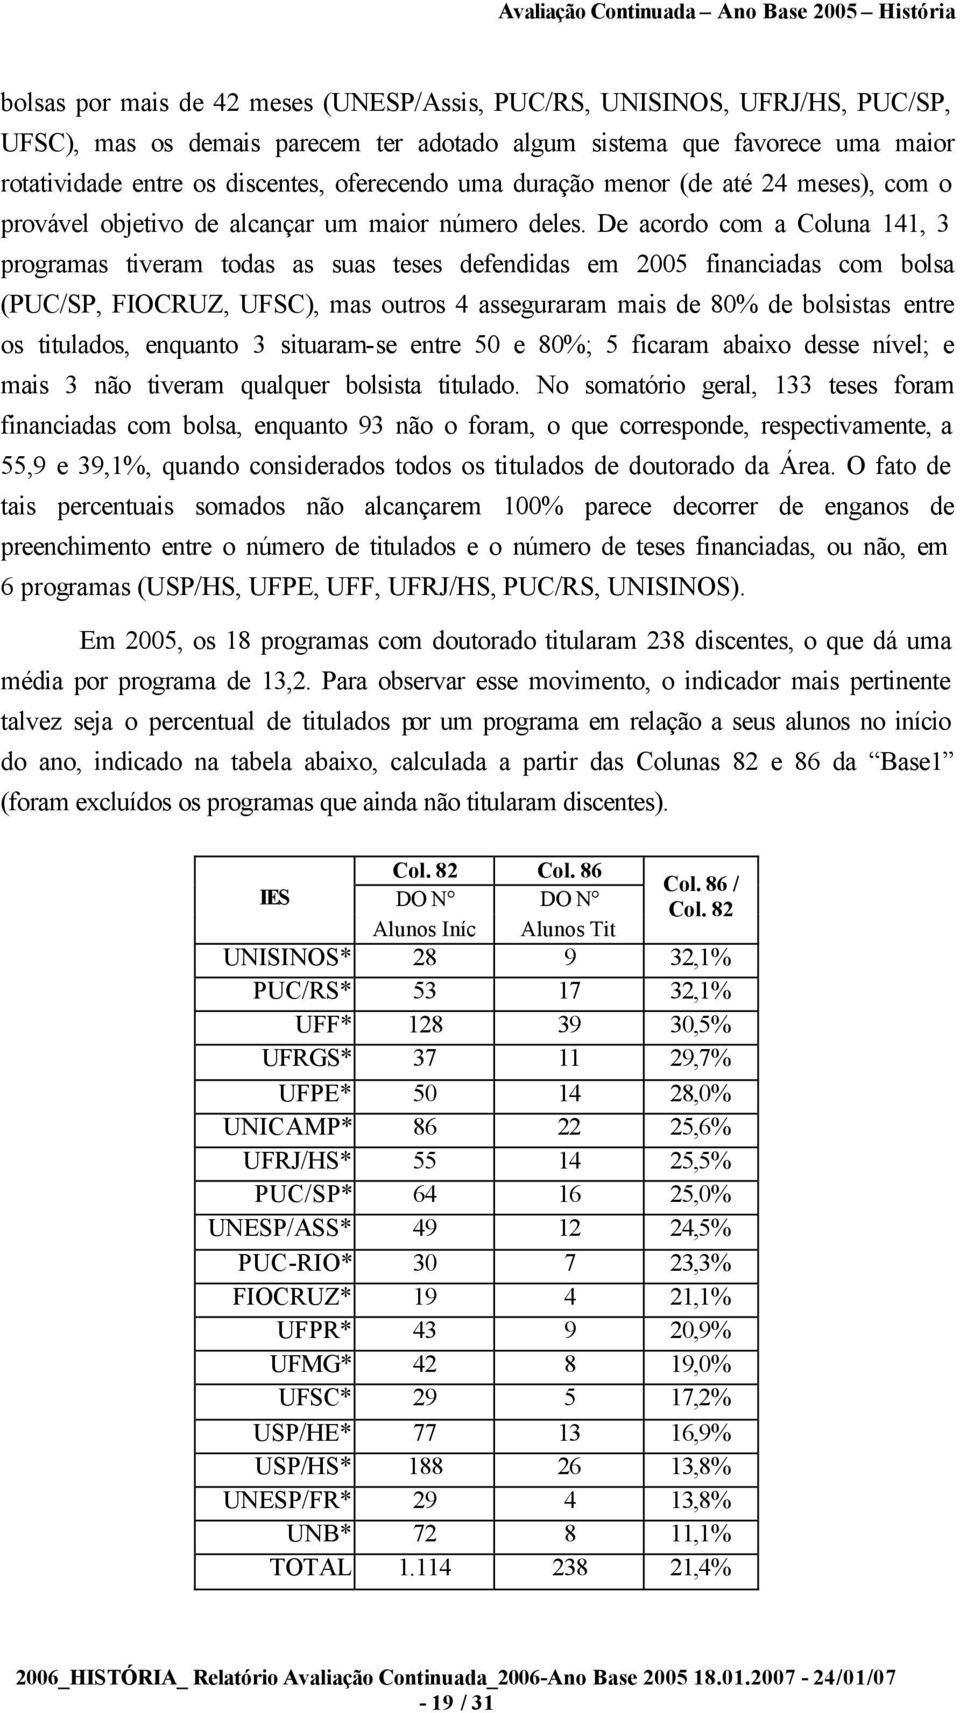 De acordo com a Coluna 141, 3 programas tiveram todas as suas teses defendidas em 2005 financiadas com bolsa (PUC/SP, FIOCRUZ, UFSC), mas outros 4 asseguraram mais de 80% de bolsistas entre os